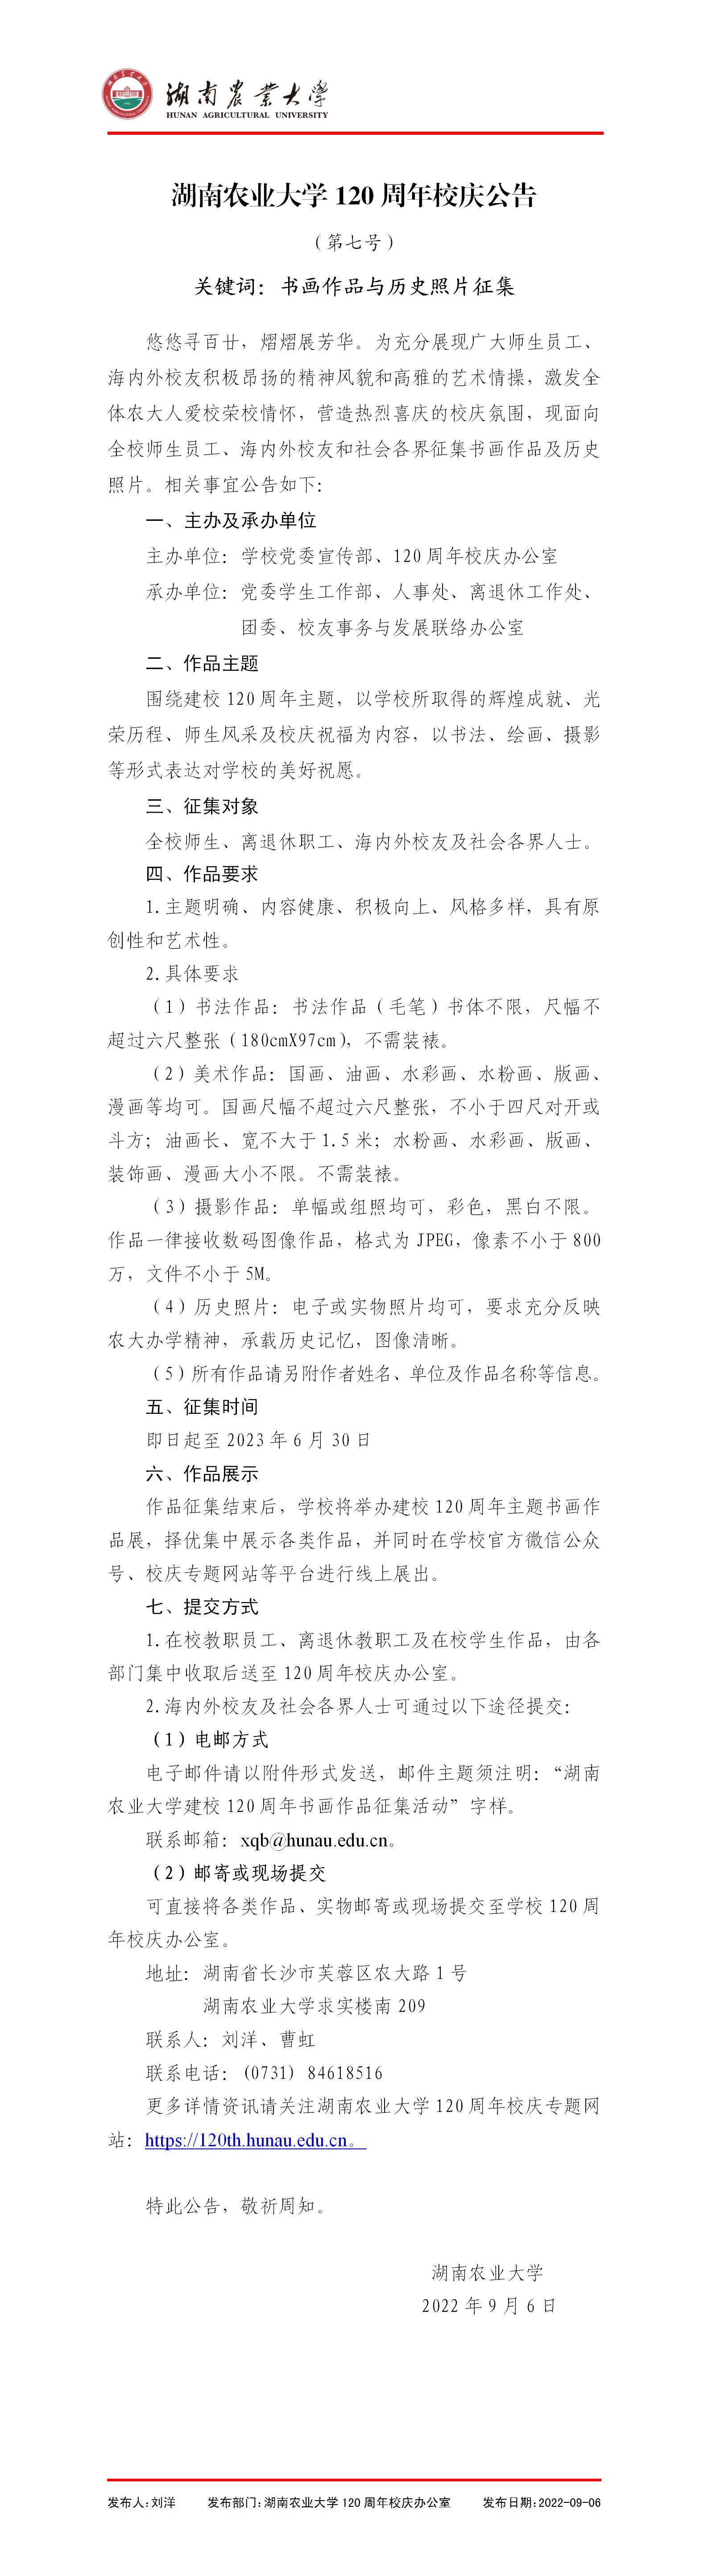 湖南农业大学120周年校庆公告（第七号）.jpg